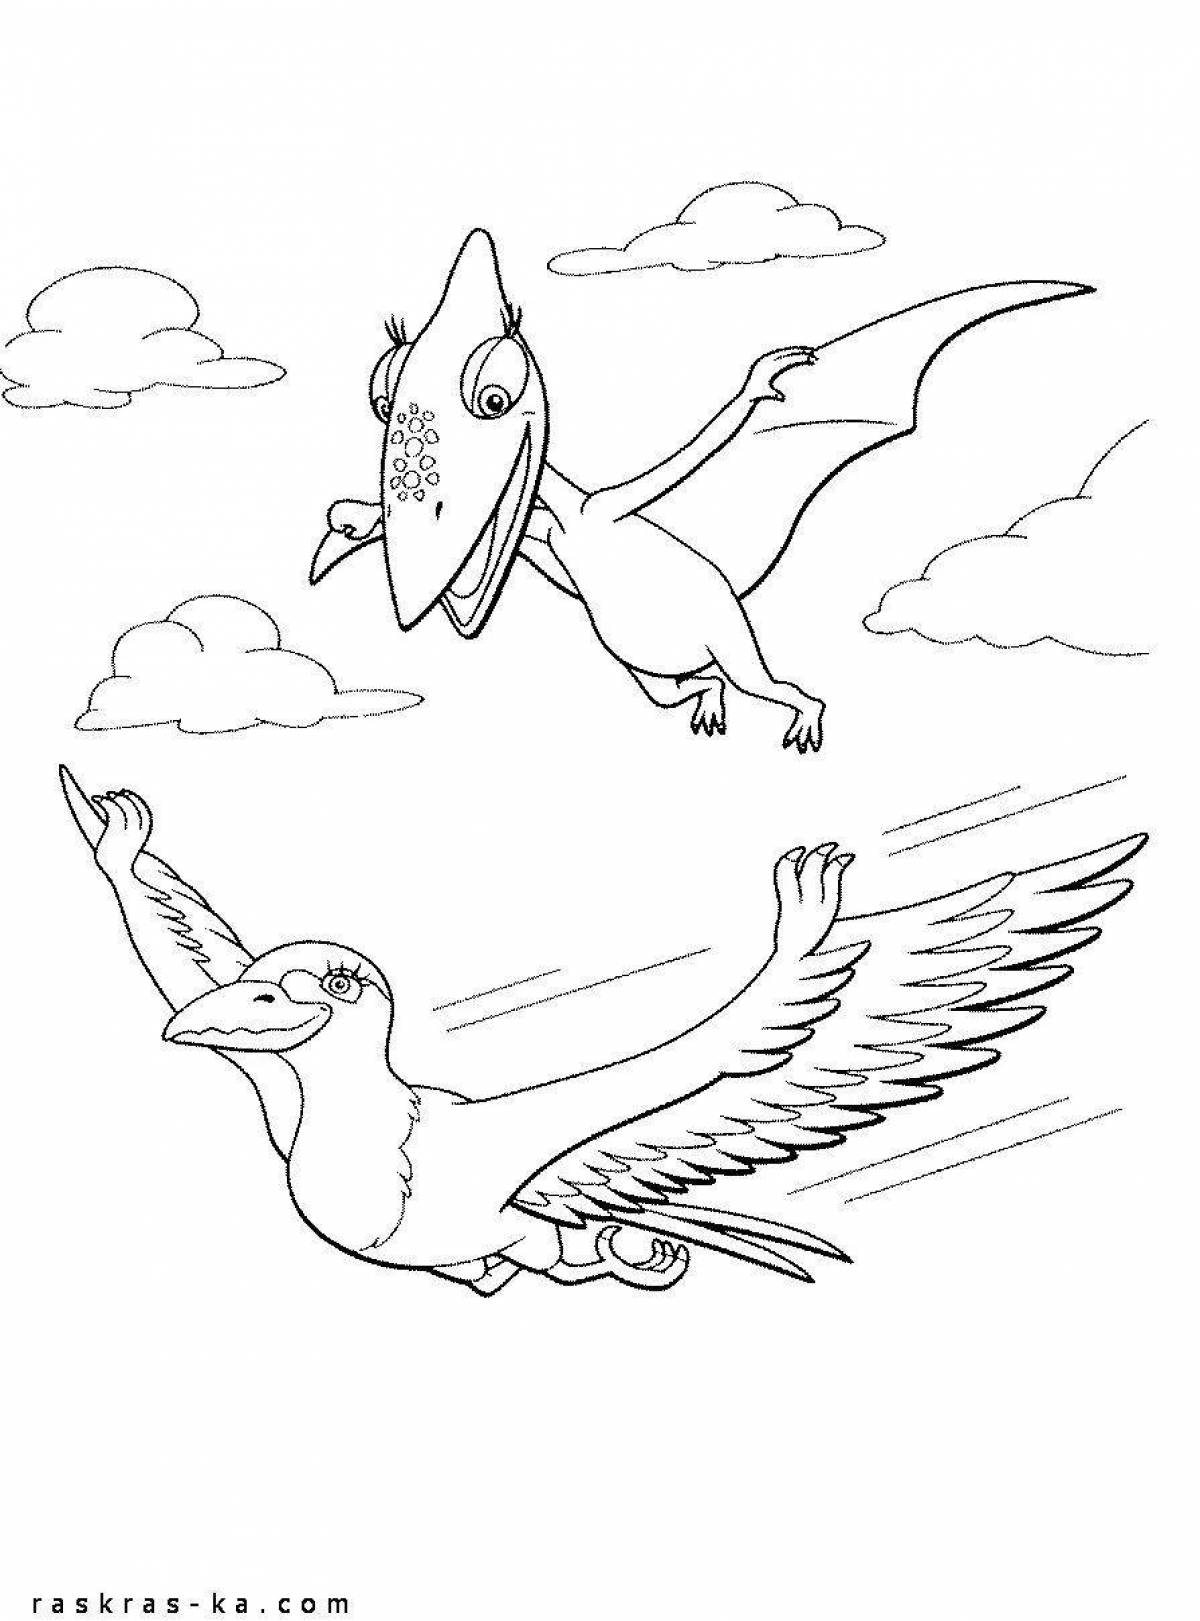 Pteranodon fun coloring book